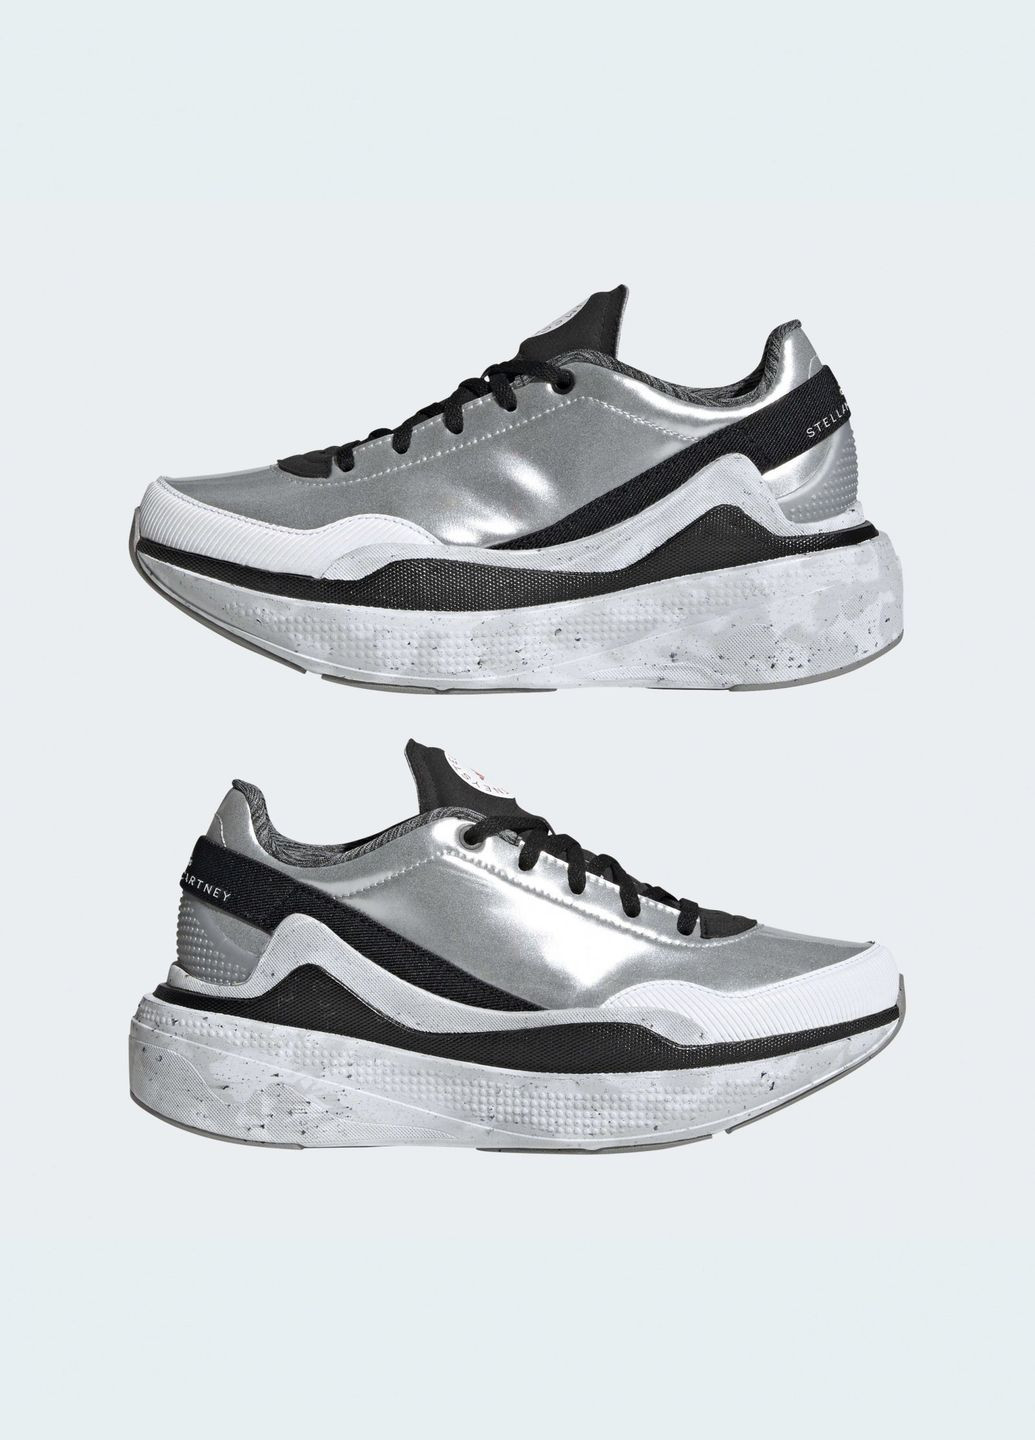 Серые демисезонные кроссовки для бега Adidas by Stella McCartney Earthlight